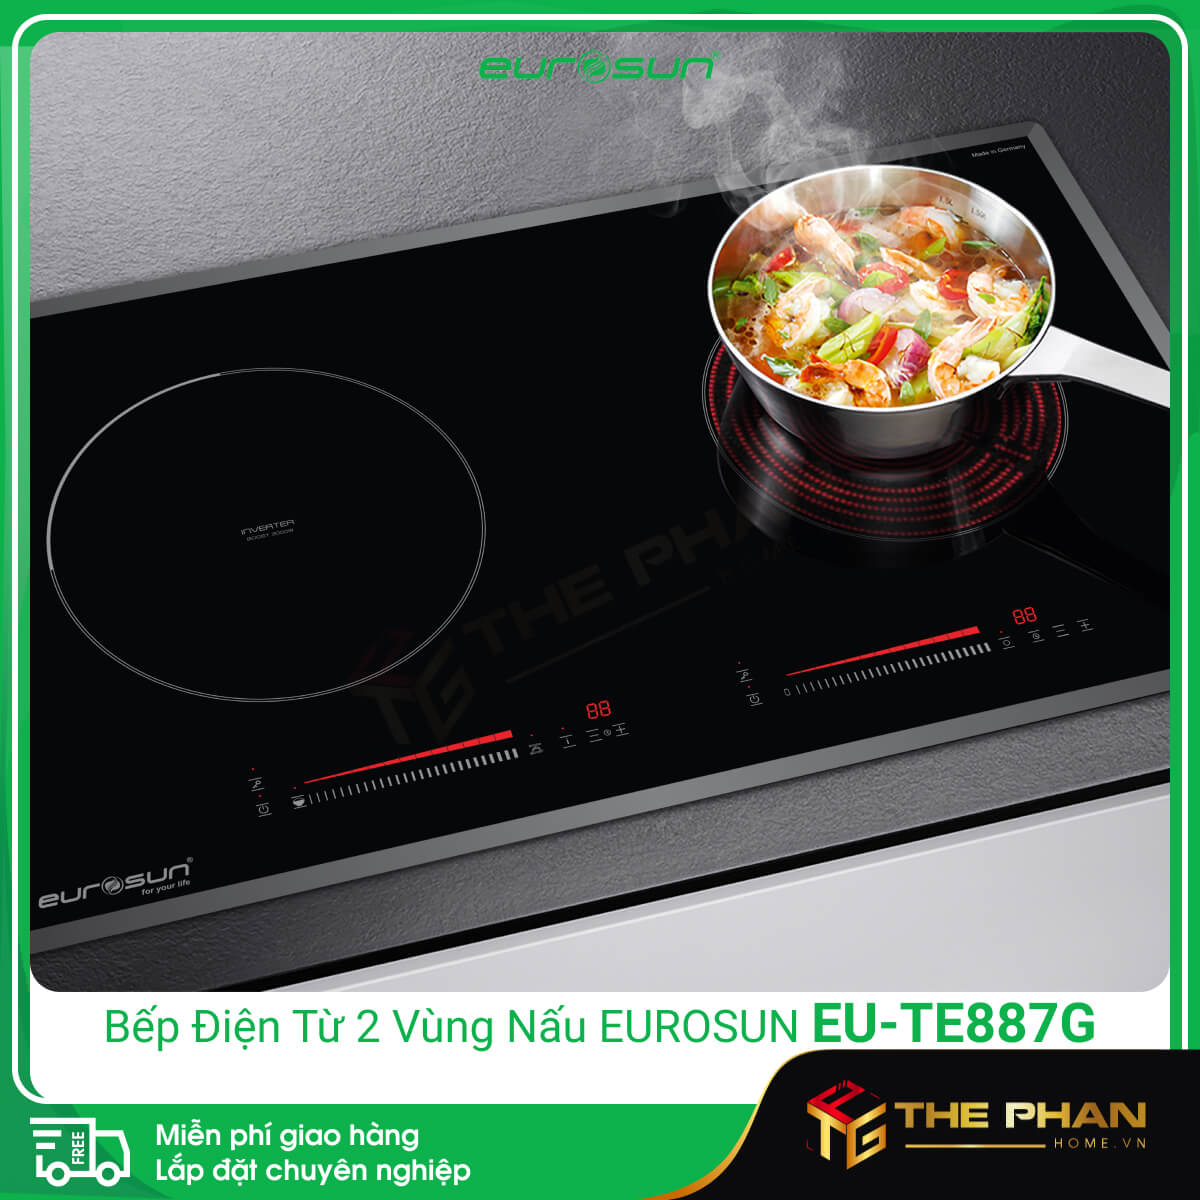 Hình ảnh thực tế Bếp điện từ đôi (1 điện + 1 hồng ngoại) Eurosun EU-TE887G